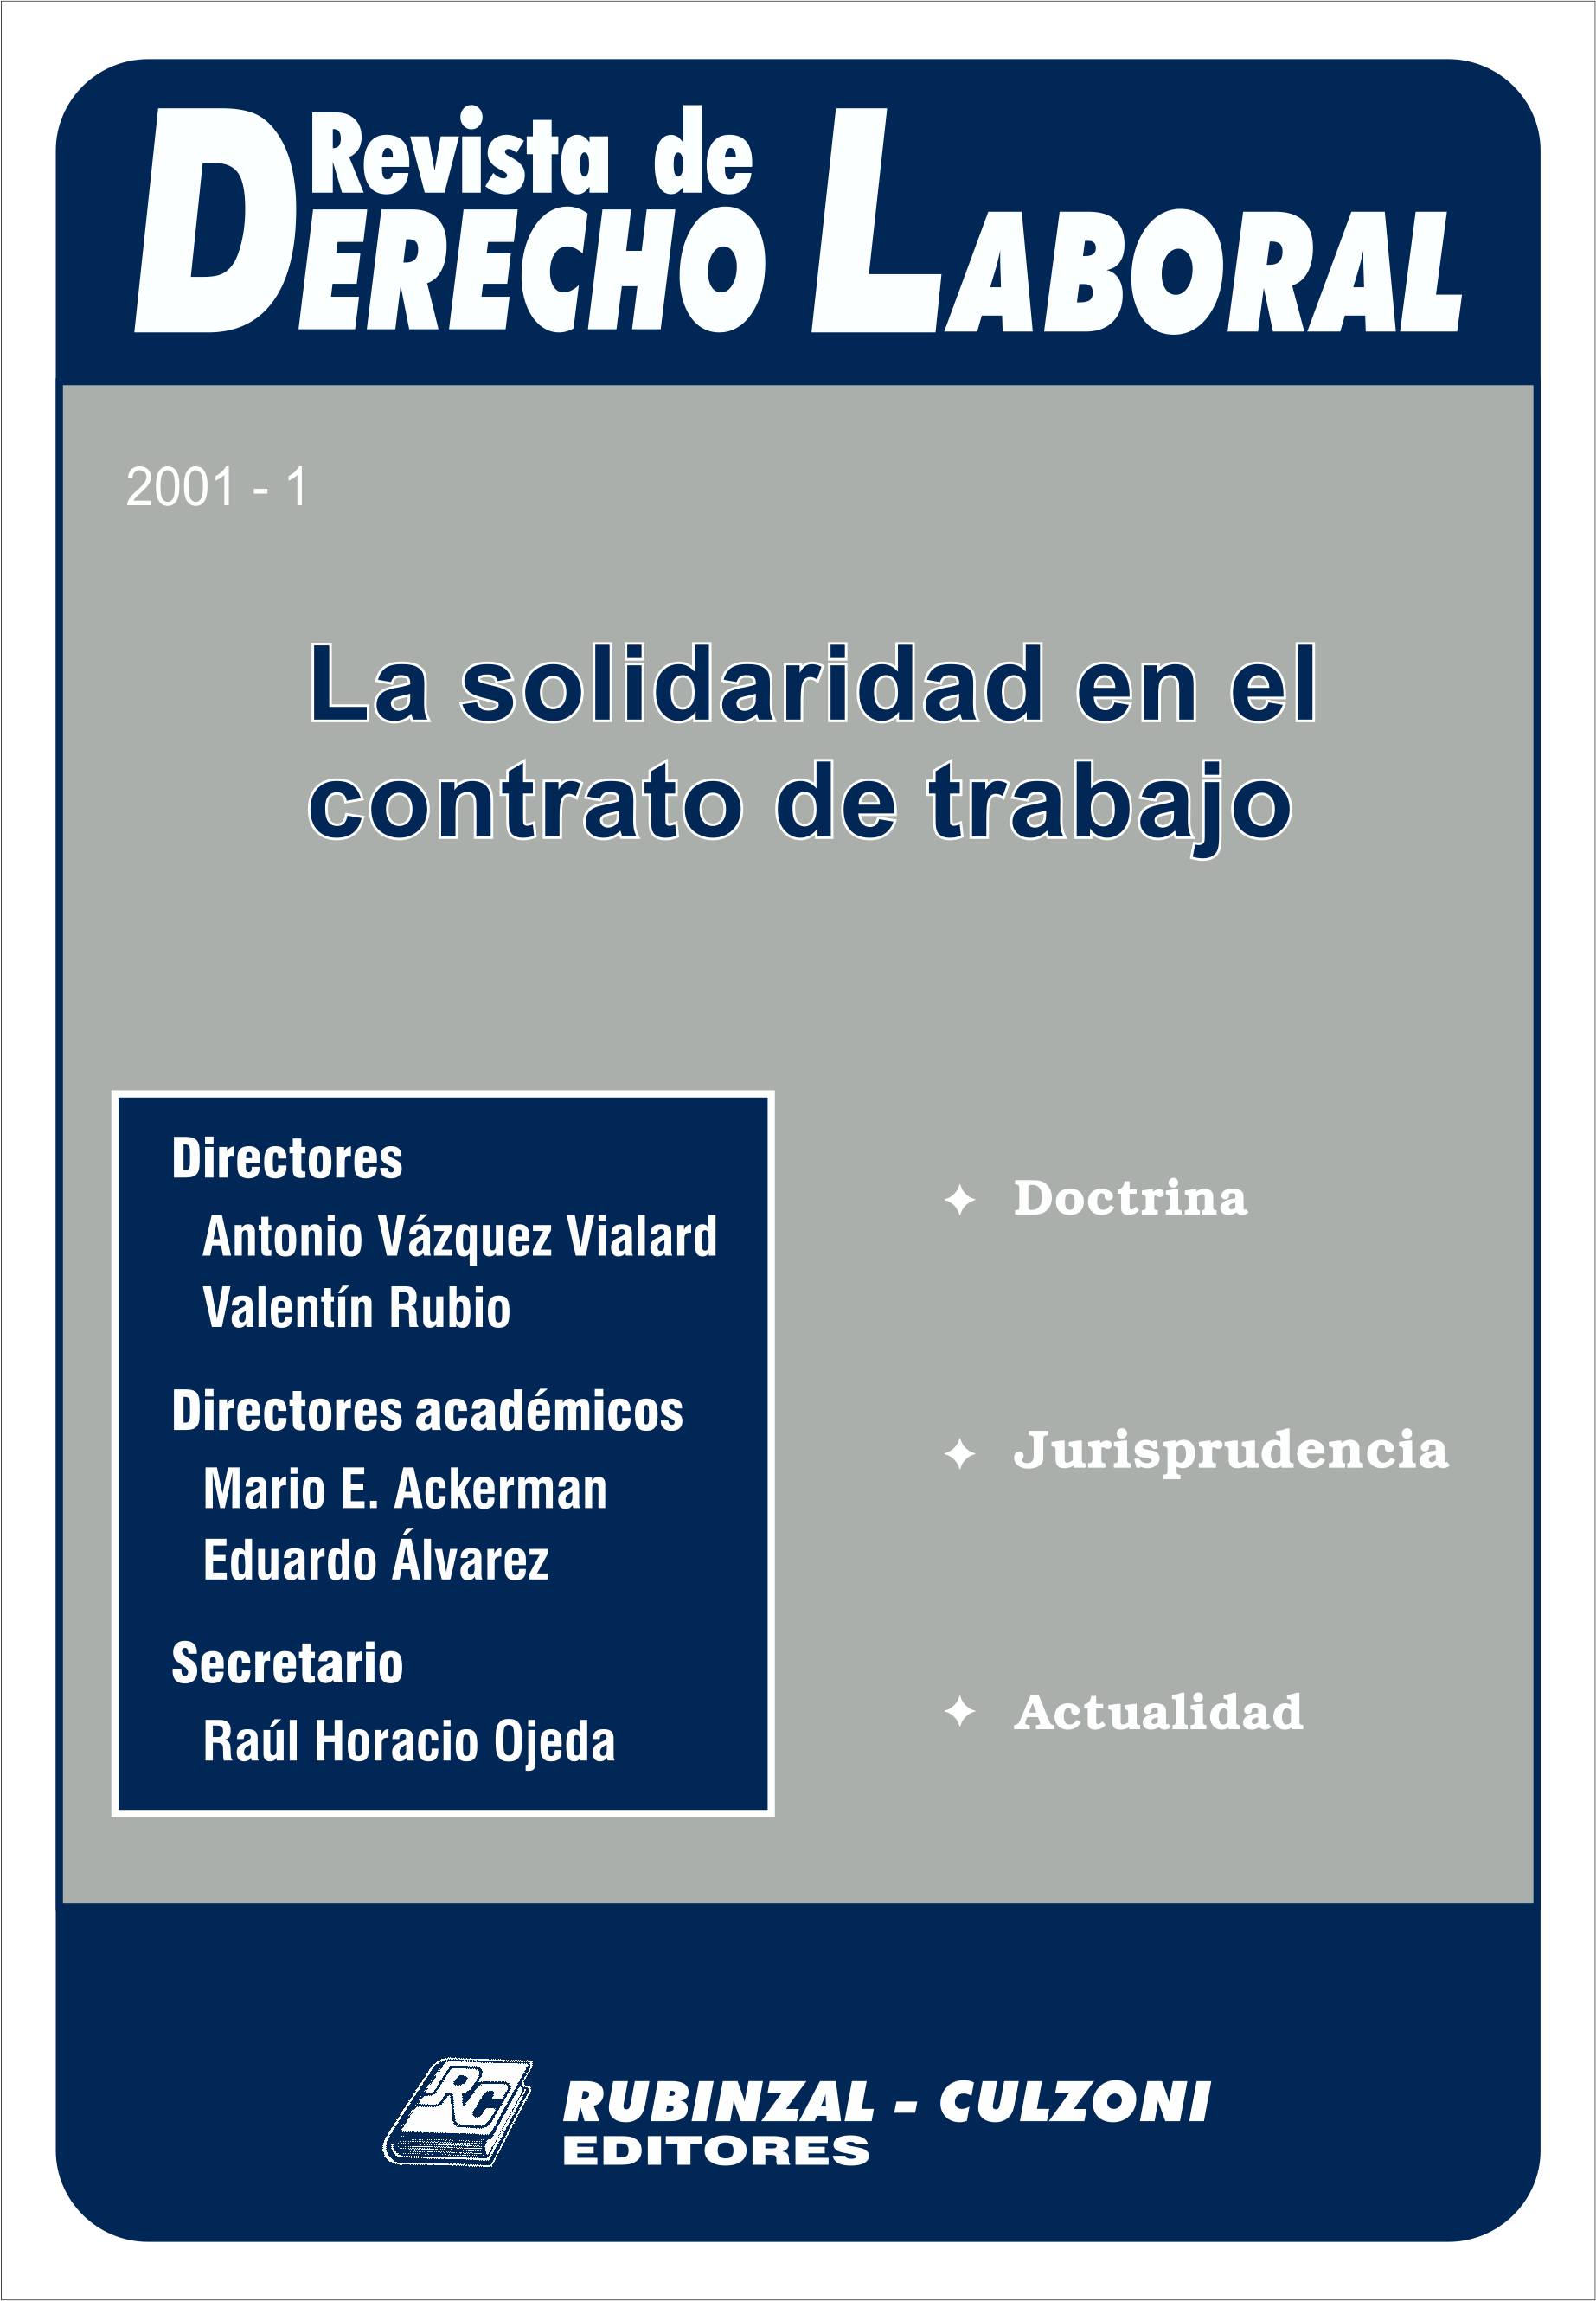 Revista de Derecho Laboral - La solidaridad en el contrato de trabajo.